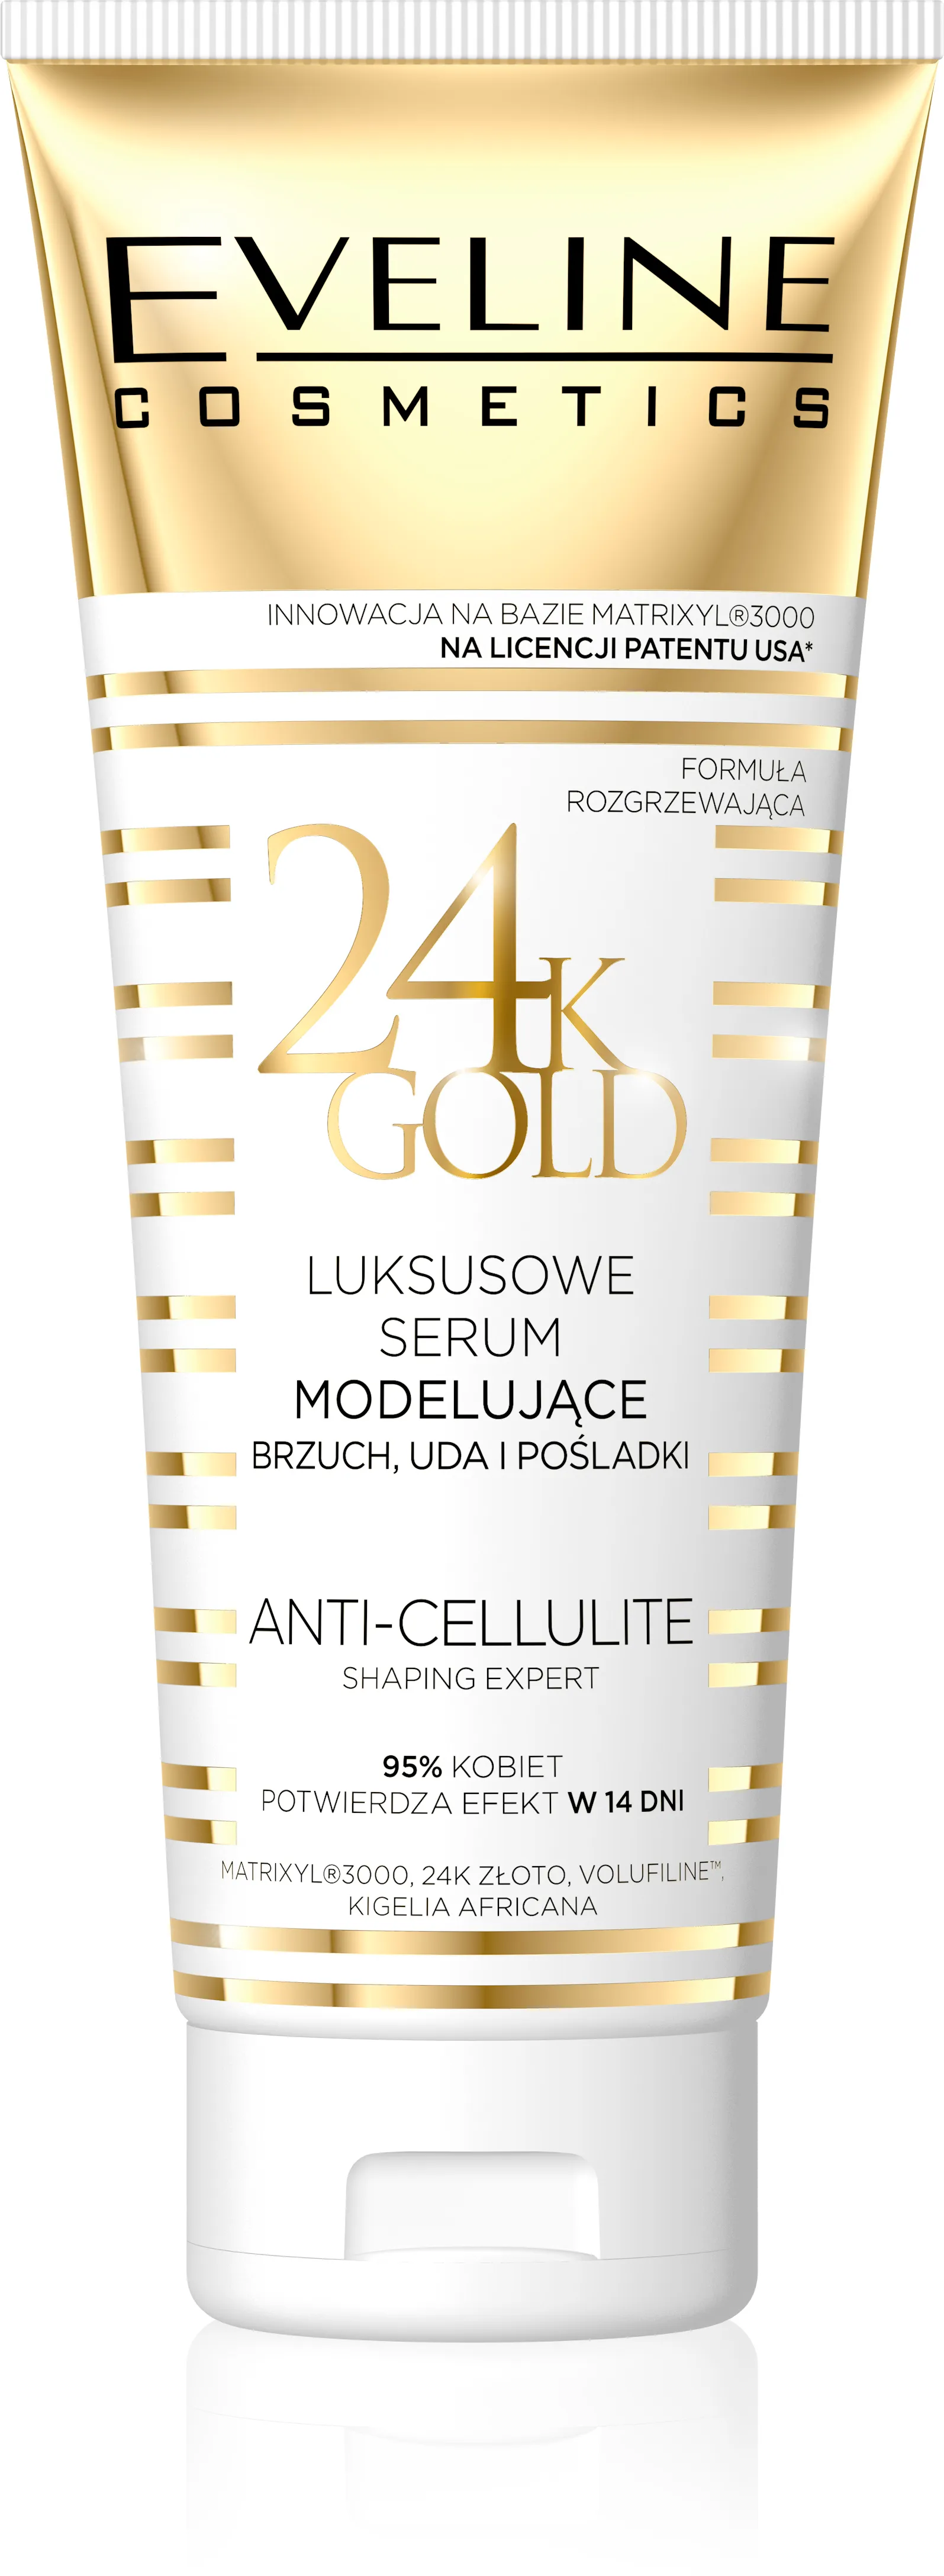 Eveline Cosmetics 24K Gold, luksusowe serum modelujące brzuch, uda i pośladki, anty-cellulitowe, 250 ml